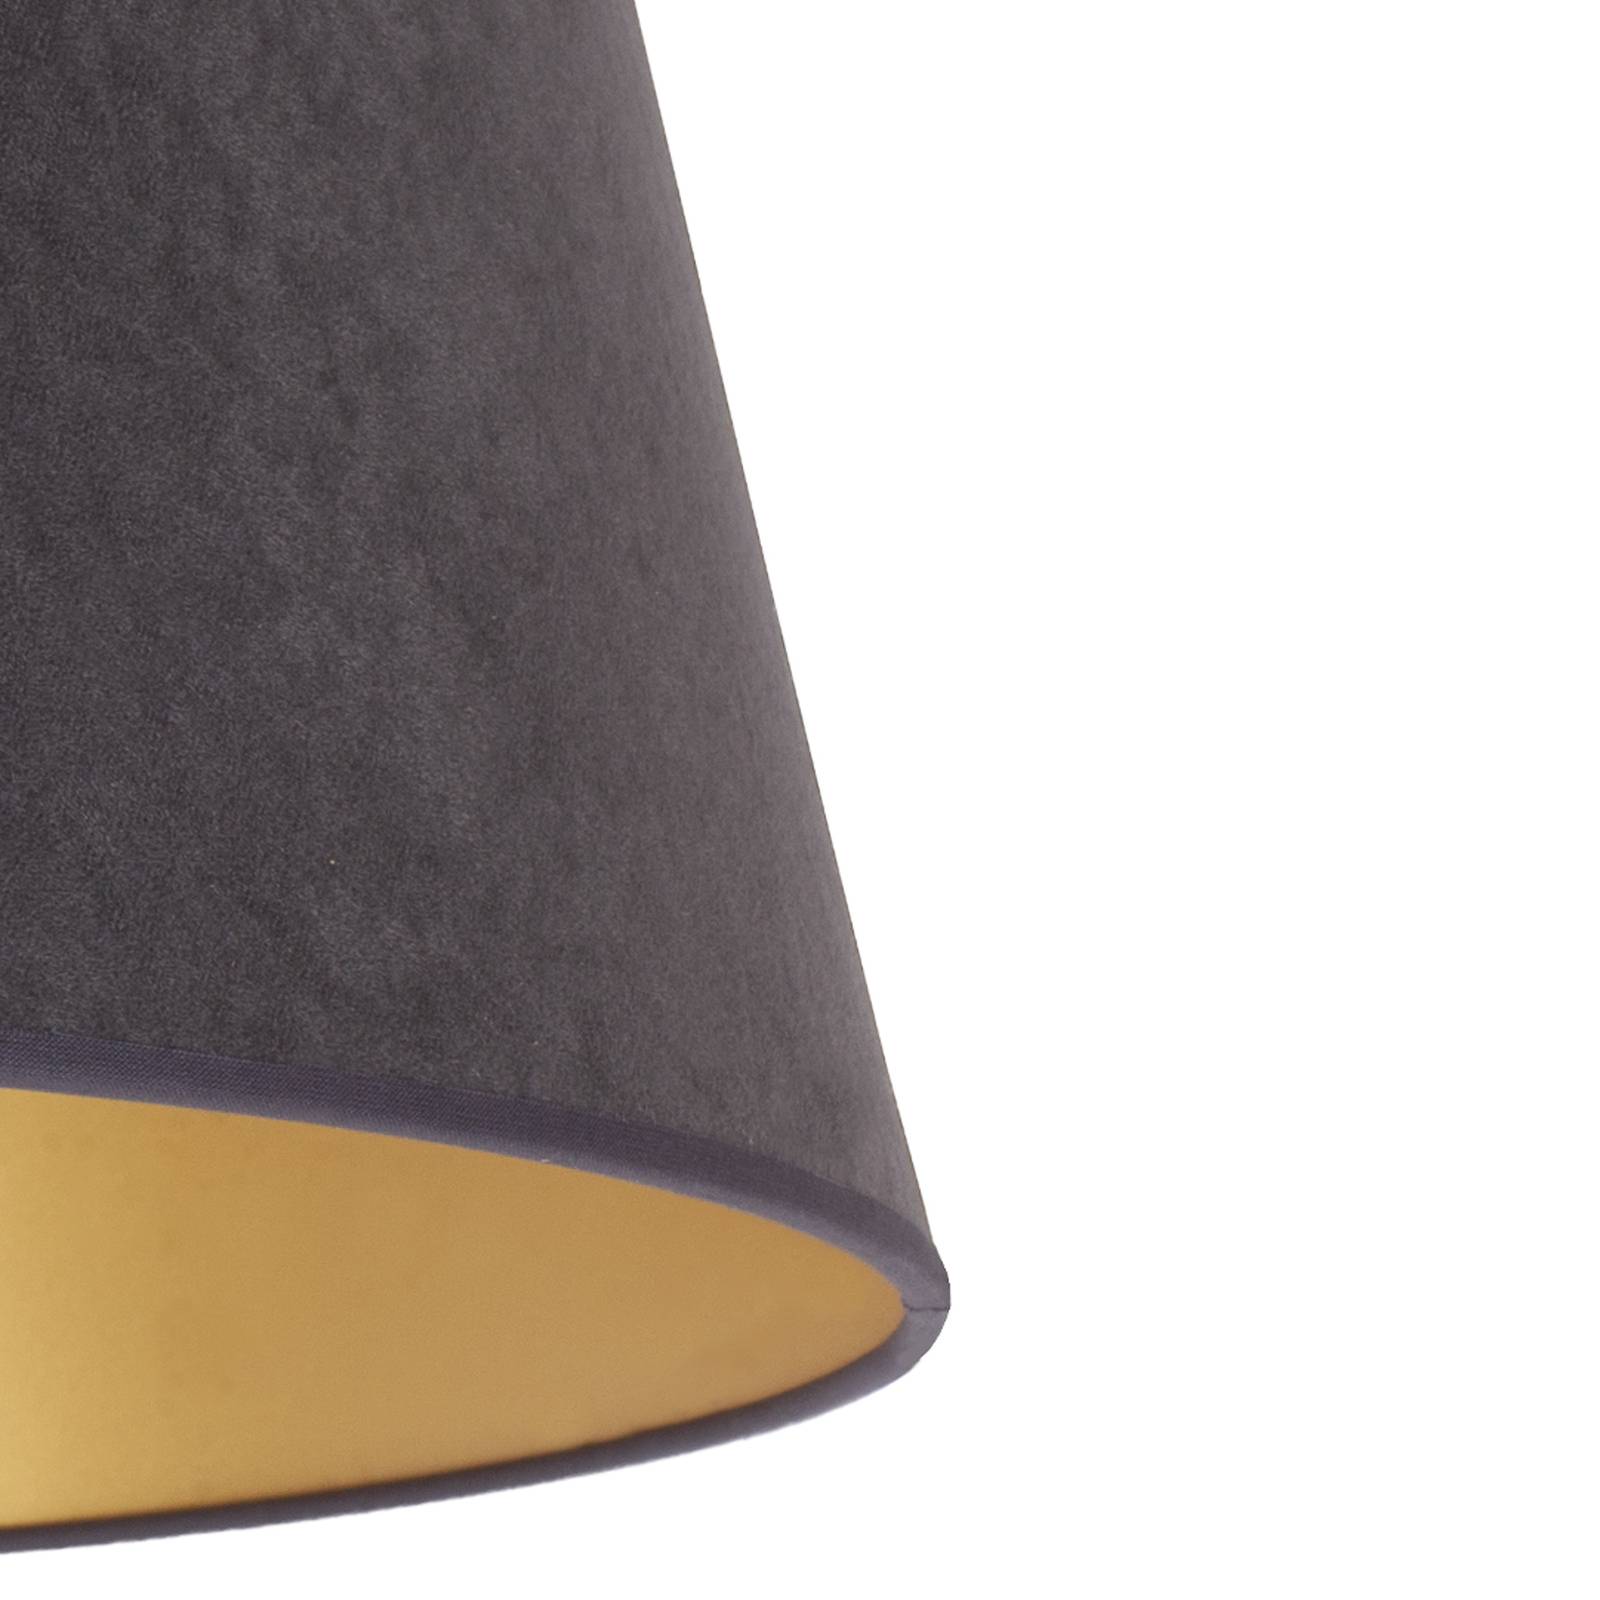 Cone lámpaernyő 22,5 cm magas, grafit/arany